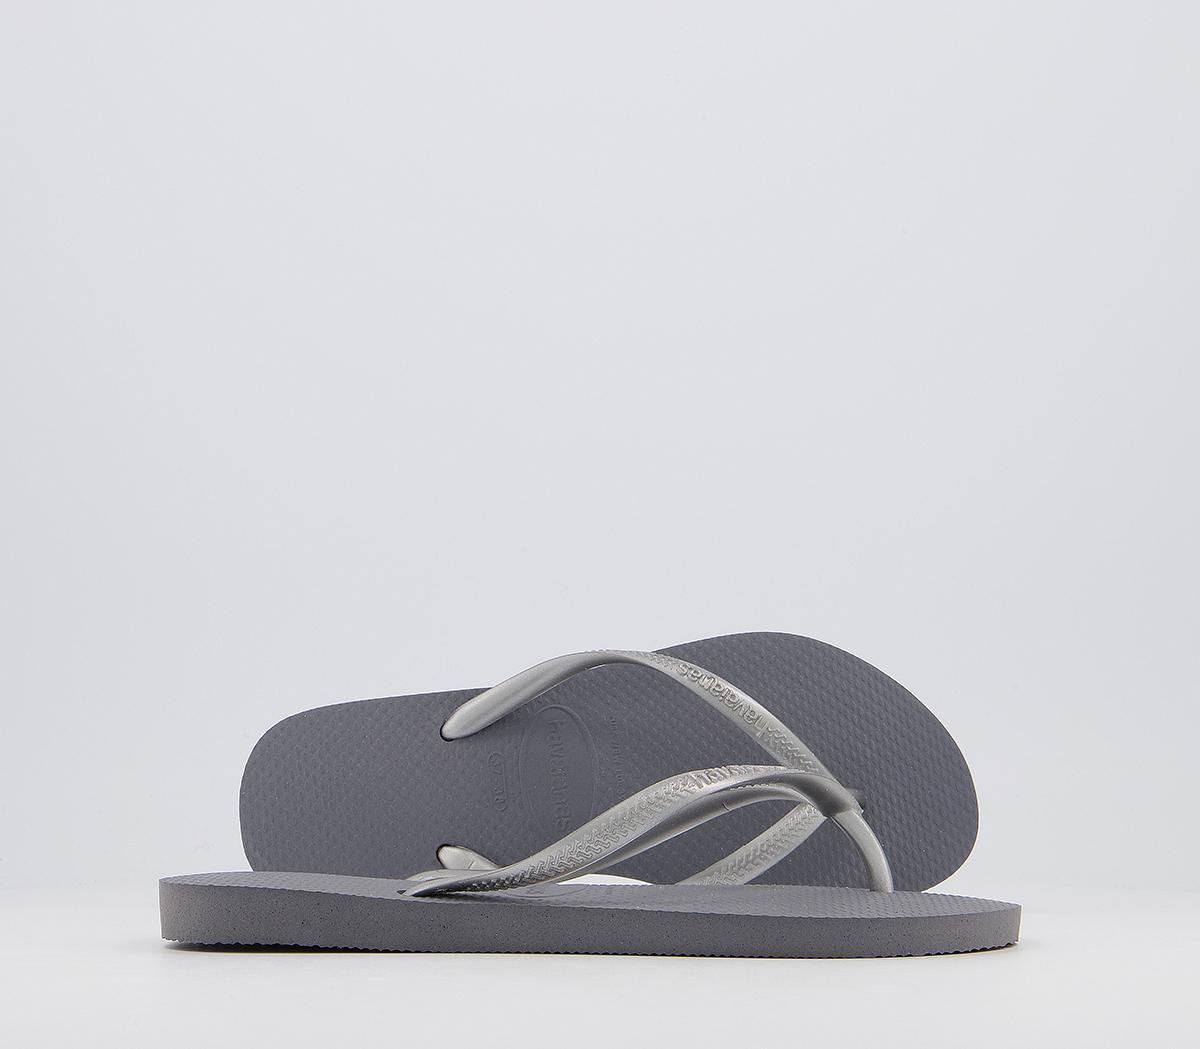 Havaianas Slim Flip Flops Grey - Women’s Sandals